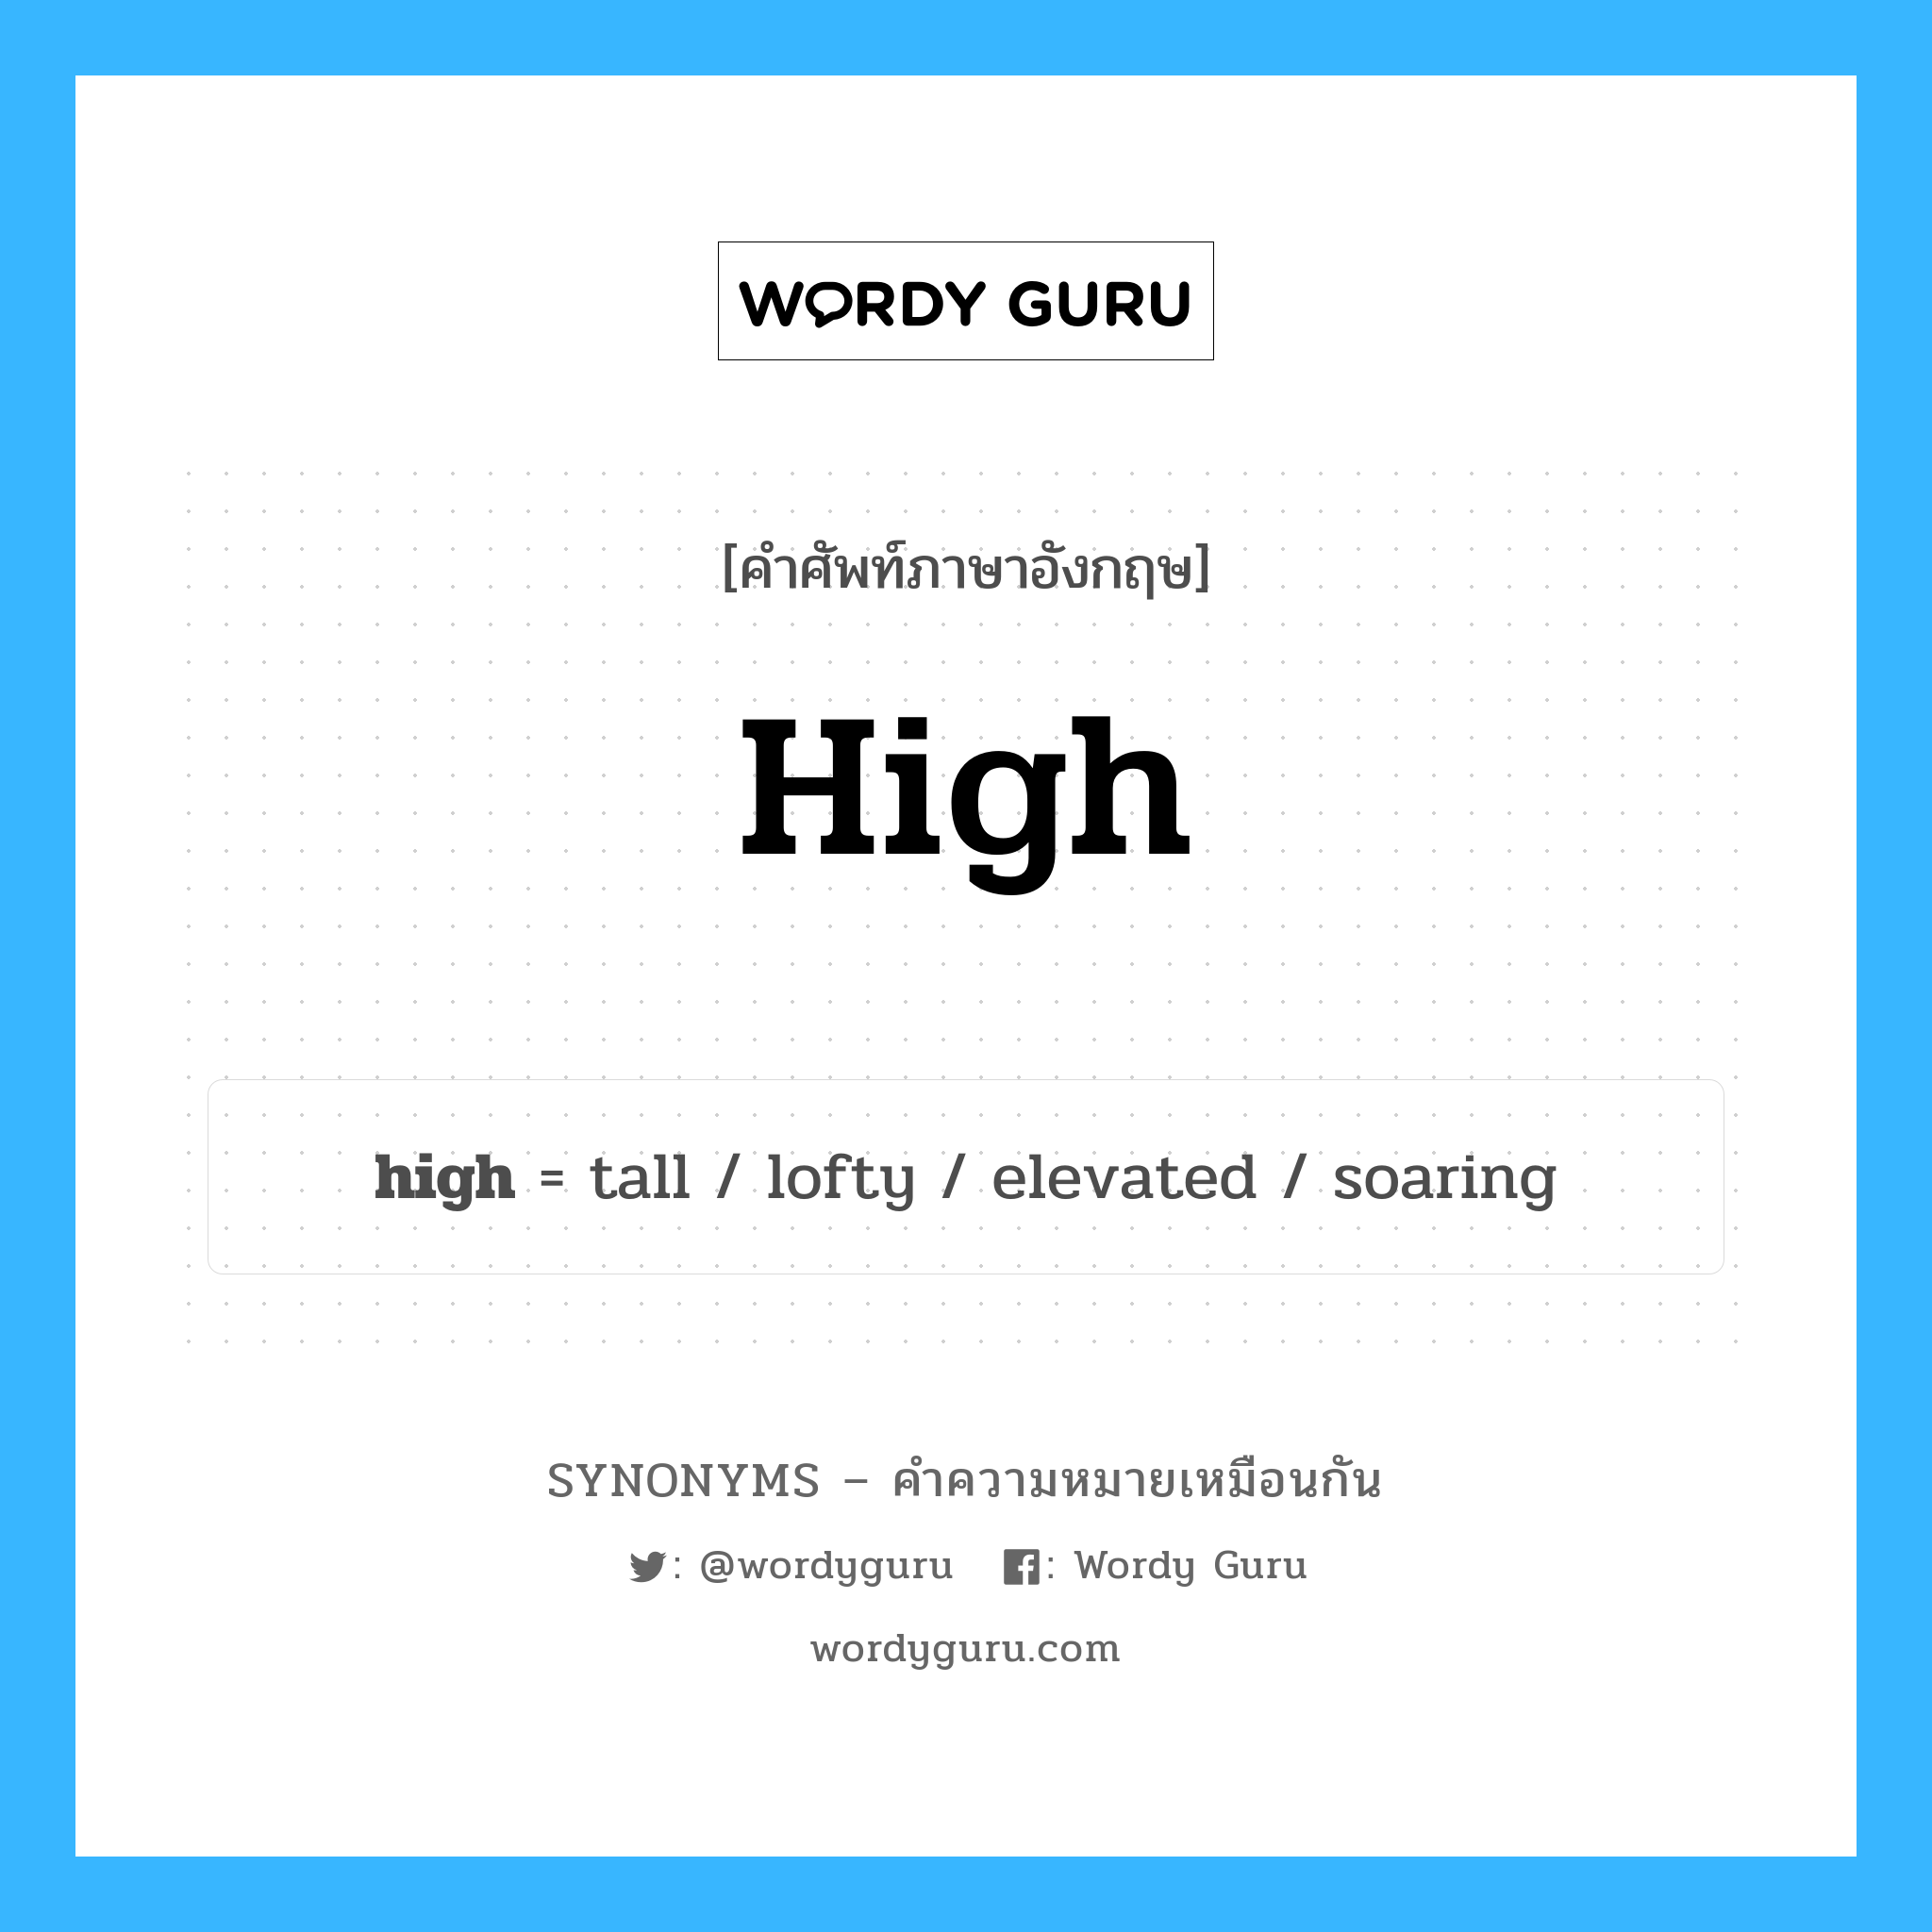 high เป็นหนึ่งใน tall และมีคำอื่น ๆ อีกดังนี้, คำศัพท์ภาษาอังกฤษ high ความหมายคล้ายกันกับ tall แปลว่า สูง หมวด tall